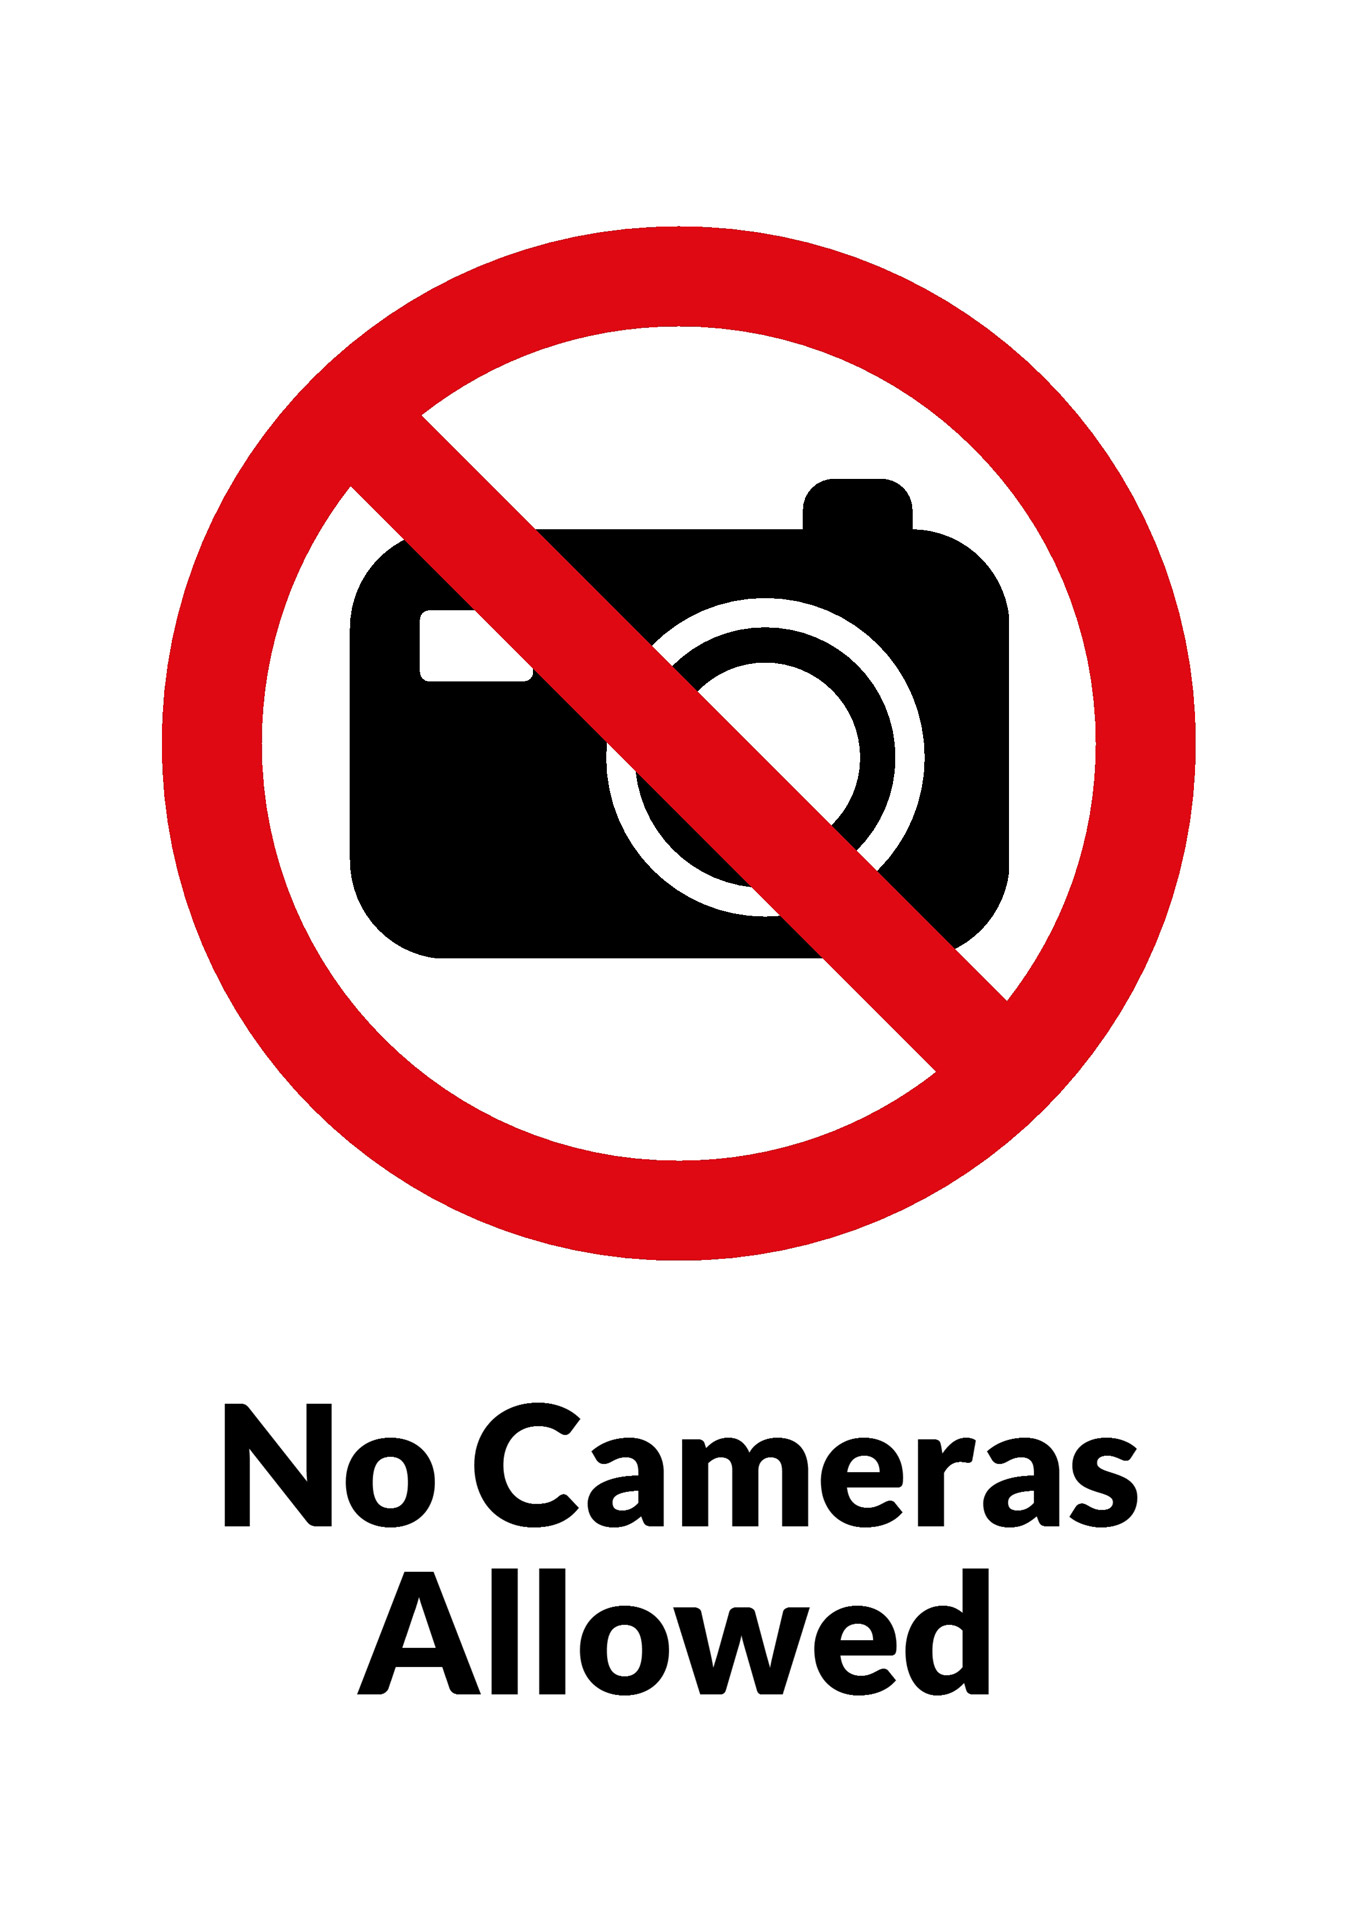 No Photos